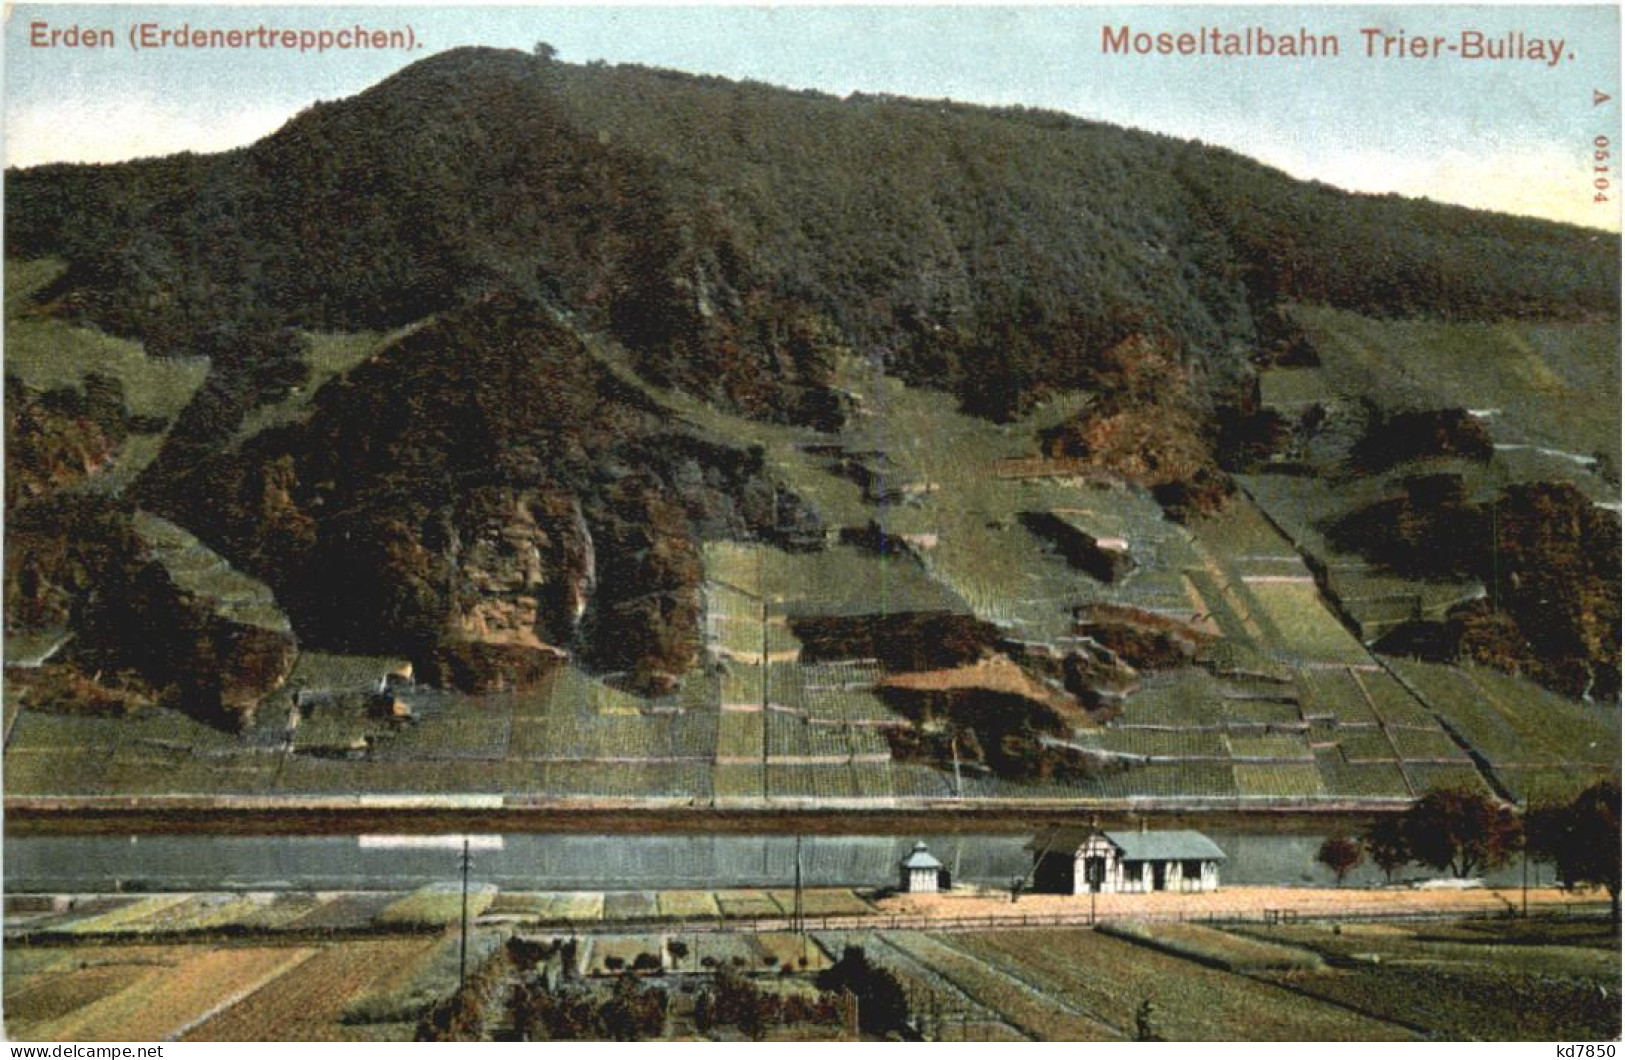 Moseltalbahn Trier-Bullay - Erden Erdenertreppchen - Bernkastel-Kues